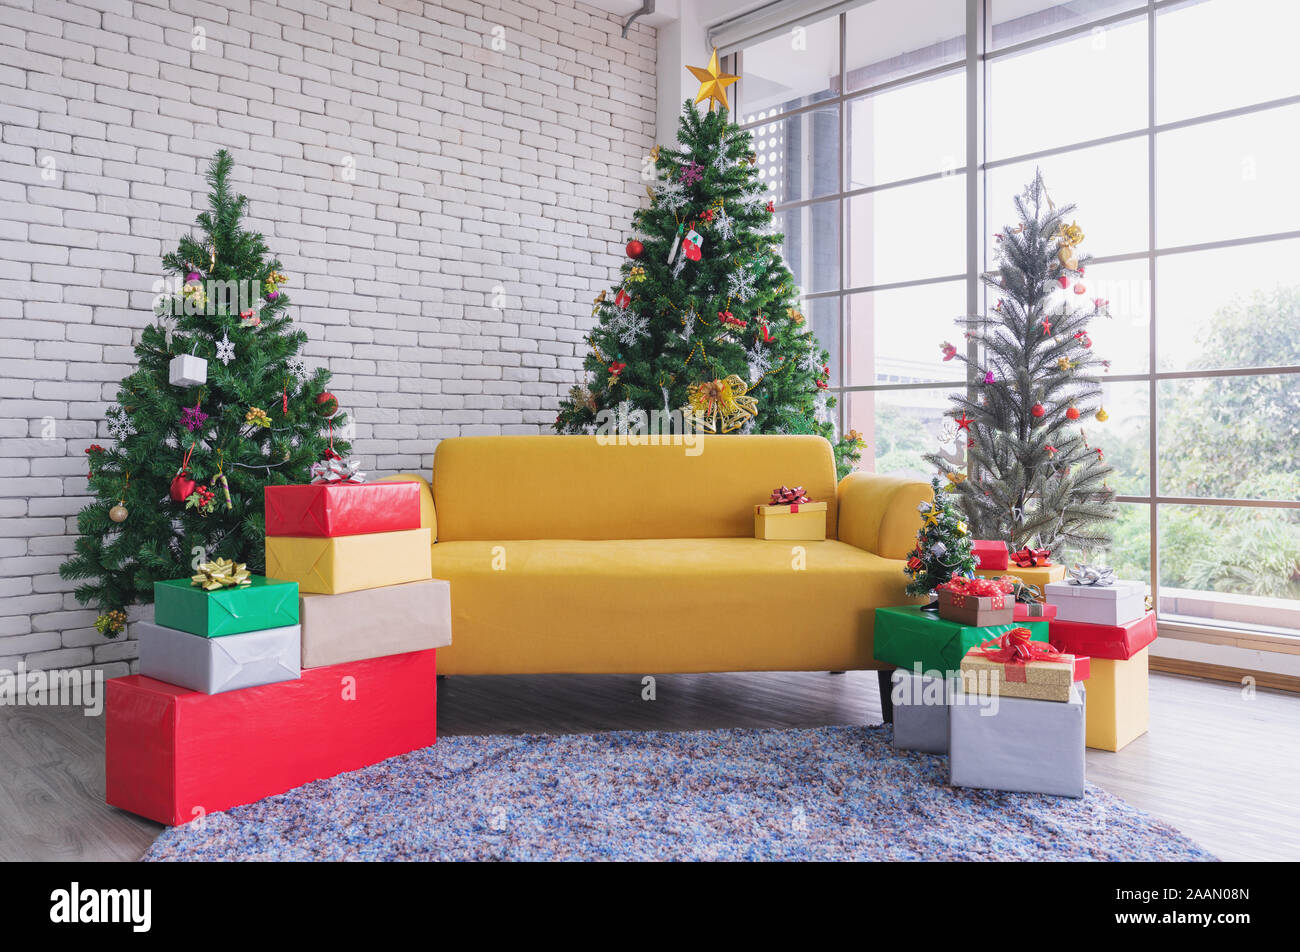 Christmas living room, Yellow sofa with Christmas trees and ...